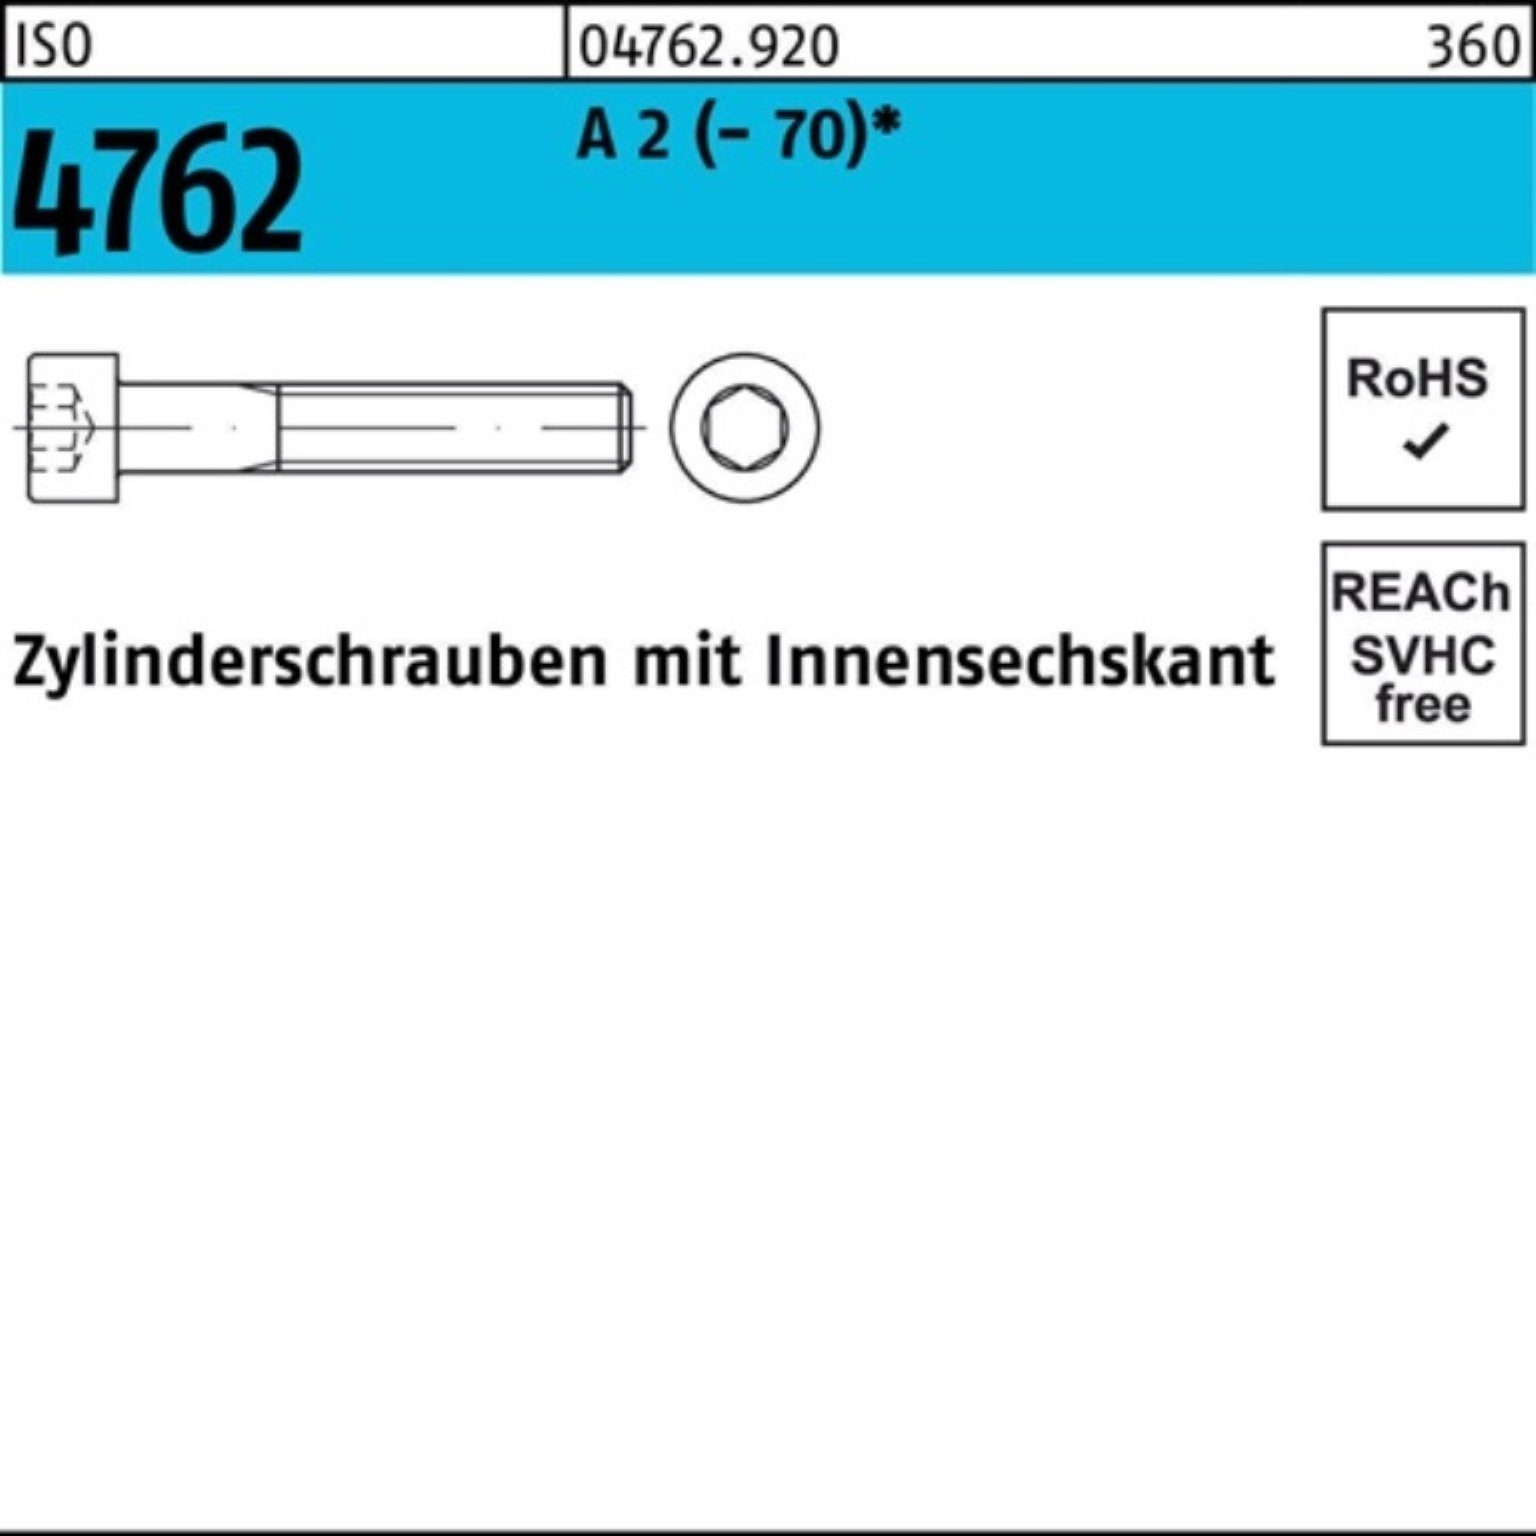 Zylinderschraube (70) M10x Pack 4762 2 ISO Reyher Innen-6kt 100er Zylinderschraube 100 60 A